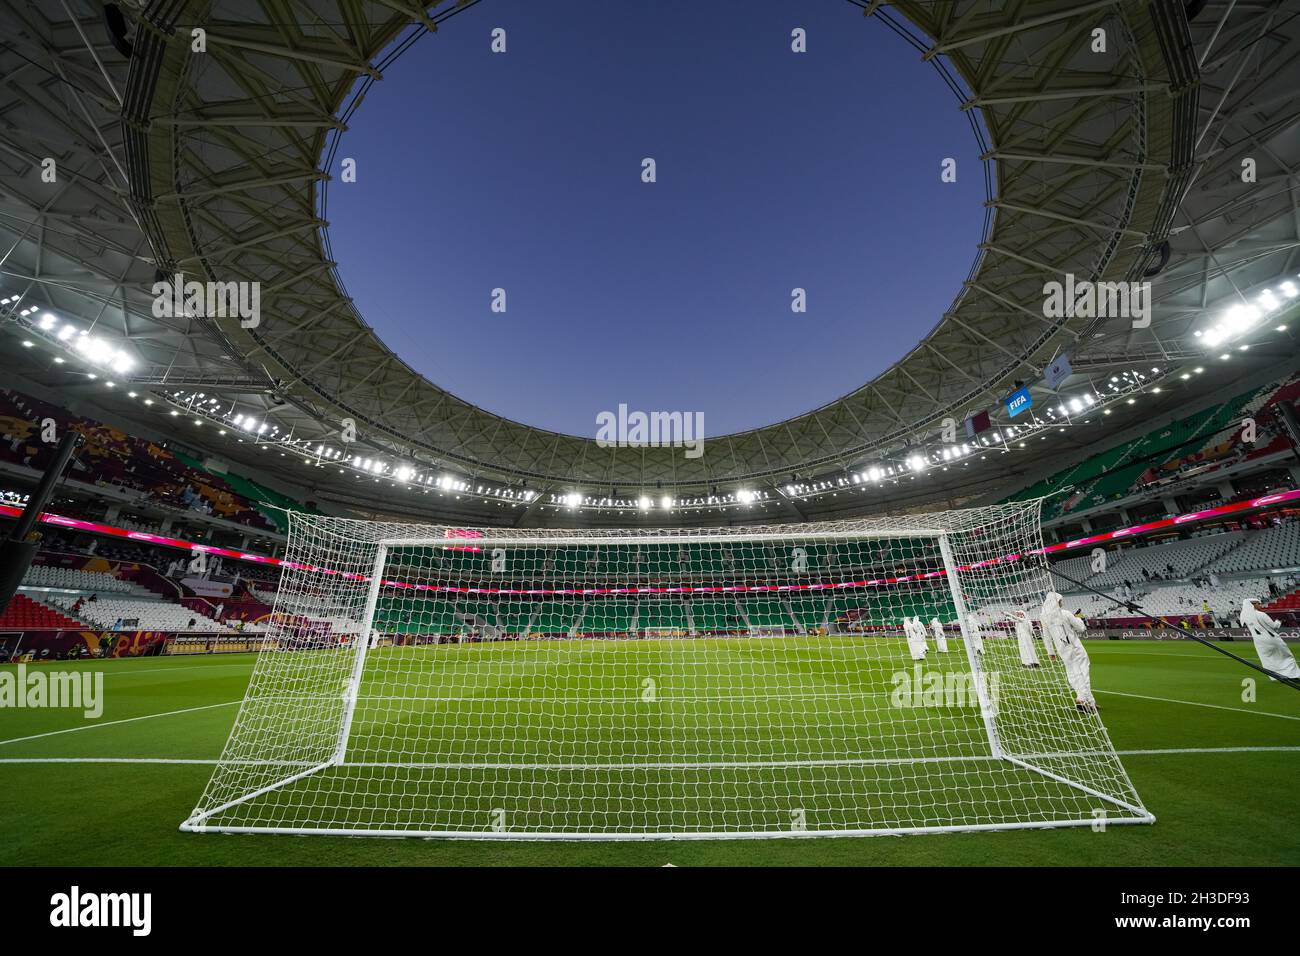 Le stade Al Thumama, inauguré avec la finale de la coupe Emir 2021 le 22 octobre 2021, sera l'un des lieux de la coupe du monde de la FIFA 2022 au Qatar. Banque D'Images